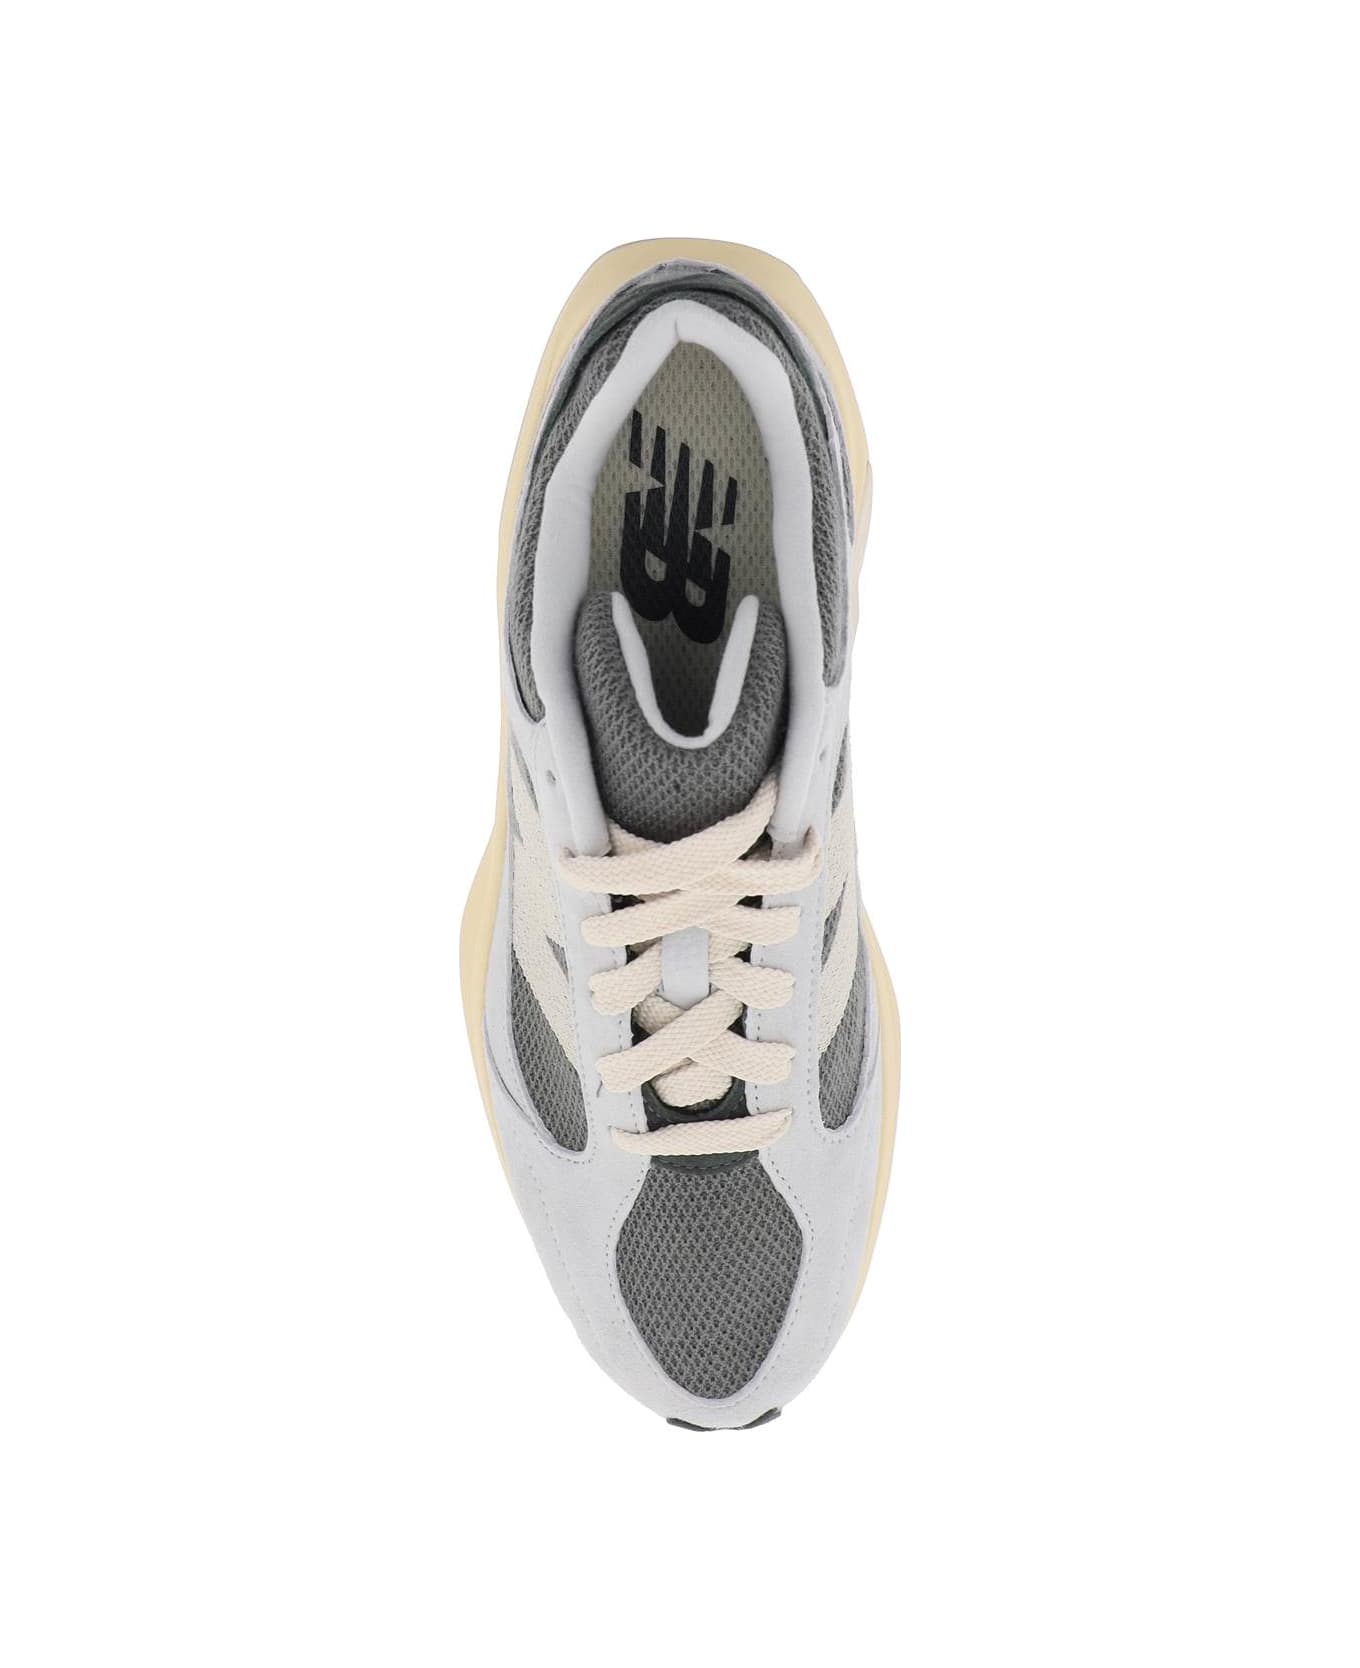 New Balance Wrpd Runner Sneakers - GREY MATTER (Grey) スニーカー